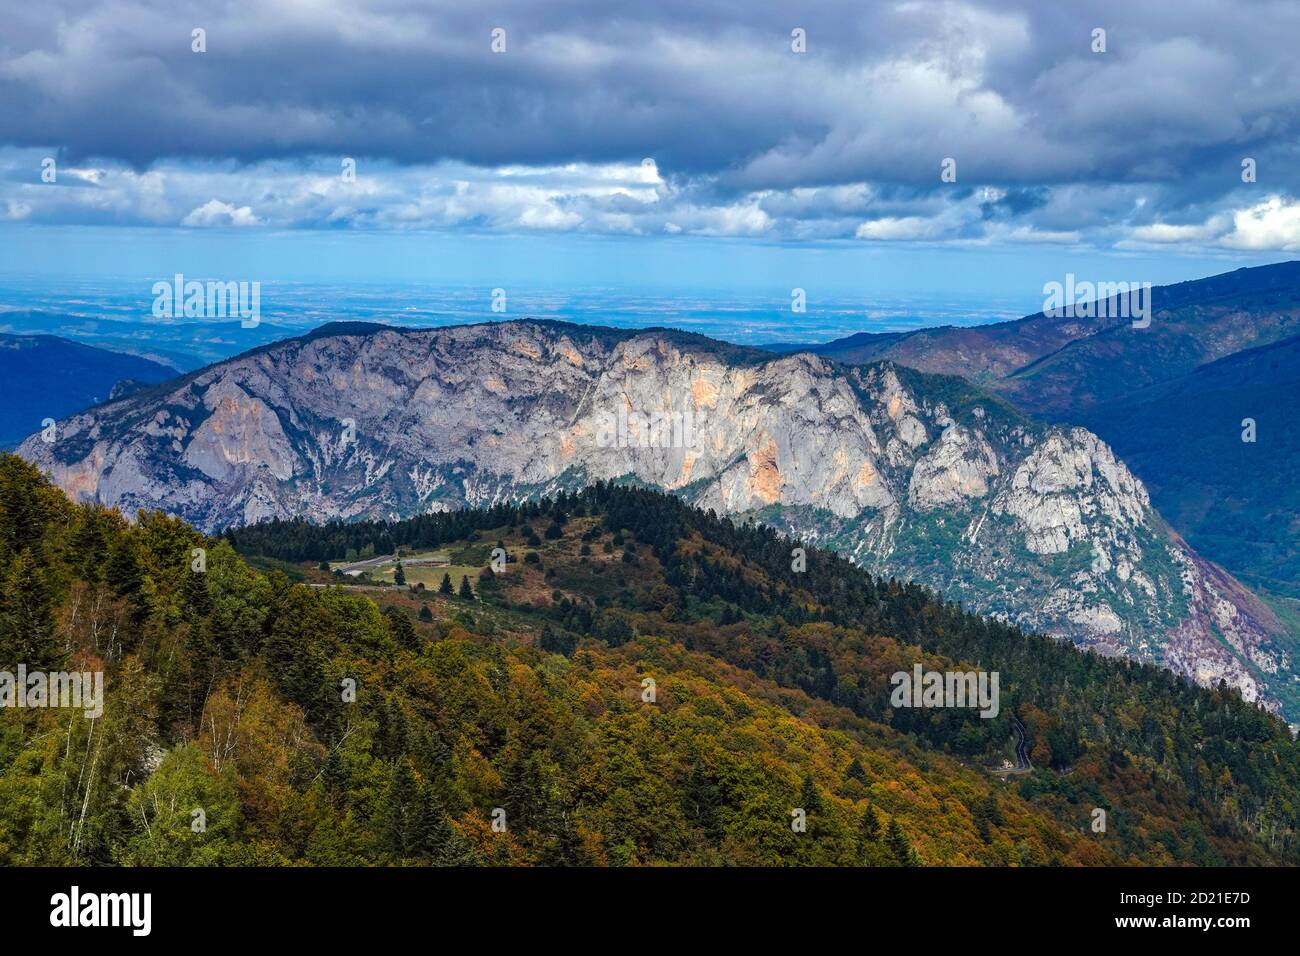 La montagna rocciosa di Sinsat vista dal Plateau de Beille, zona sciistica nordica, Les Cabannes, Ariege, Francia Foto Stock